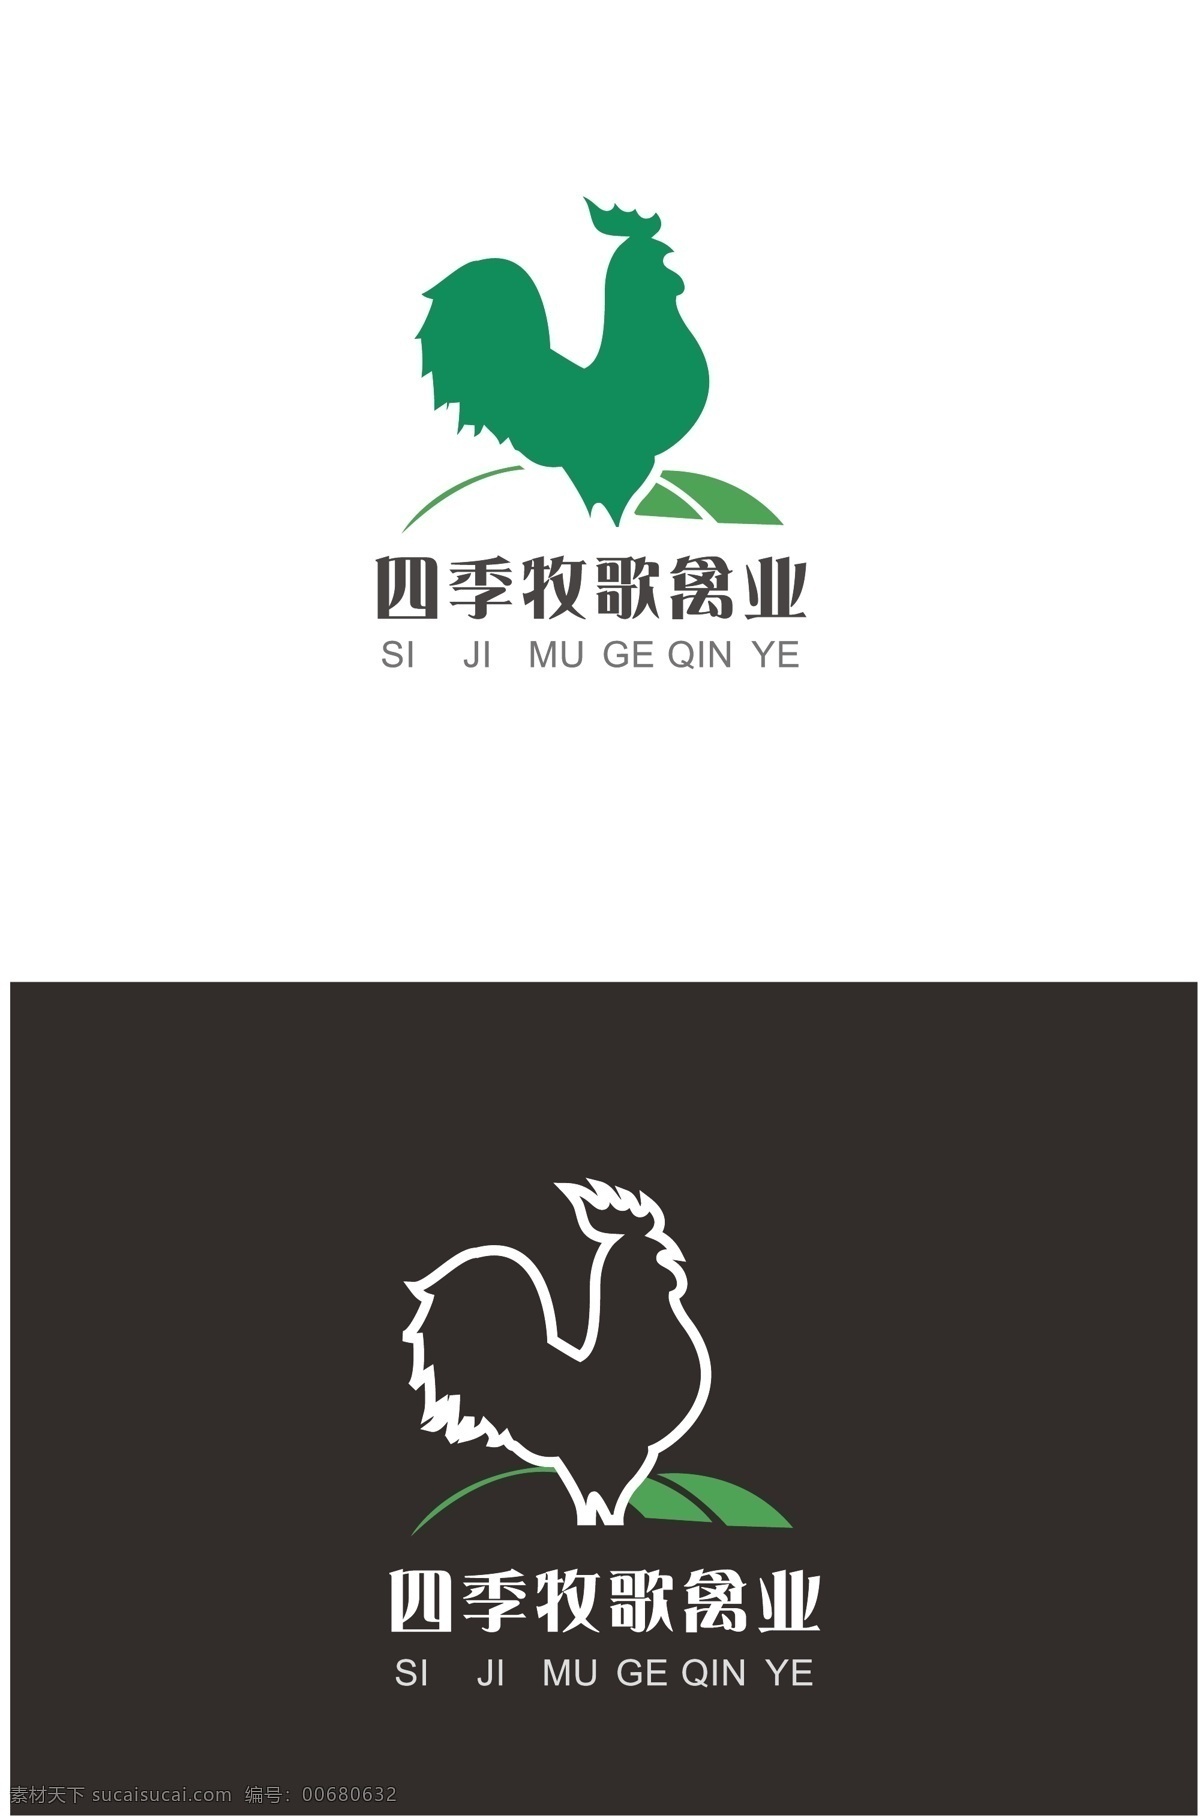 禽业企业标志 logo 禽业标志 鸡标志 鸡logo 农业logo 白色